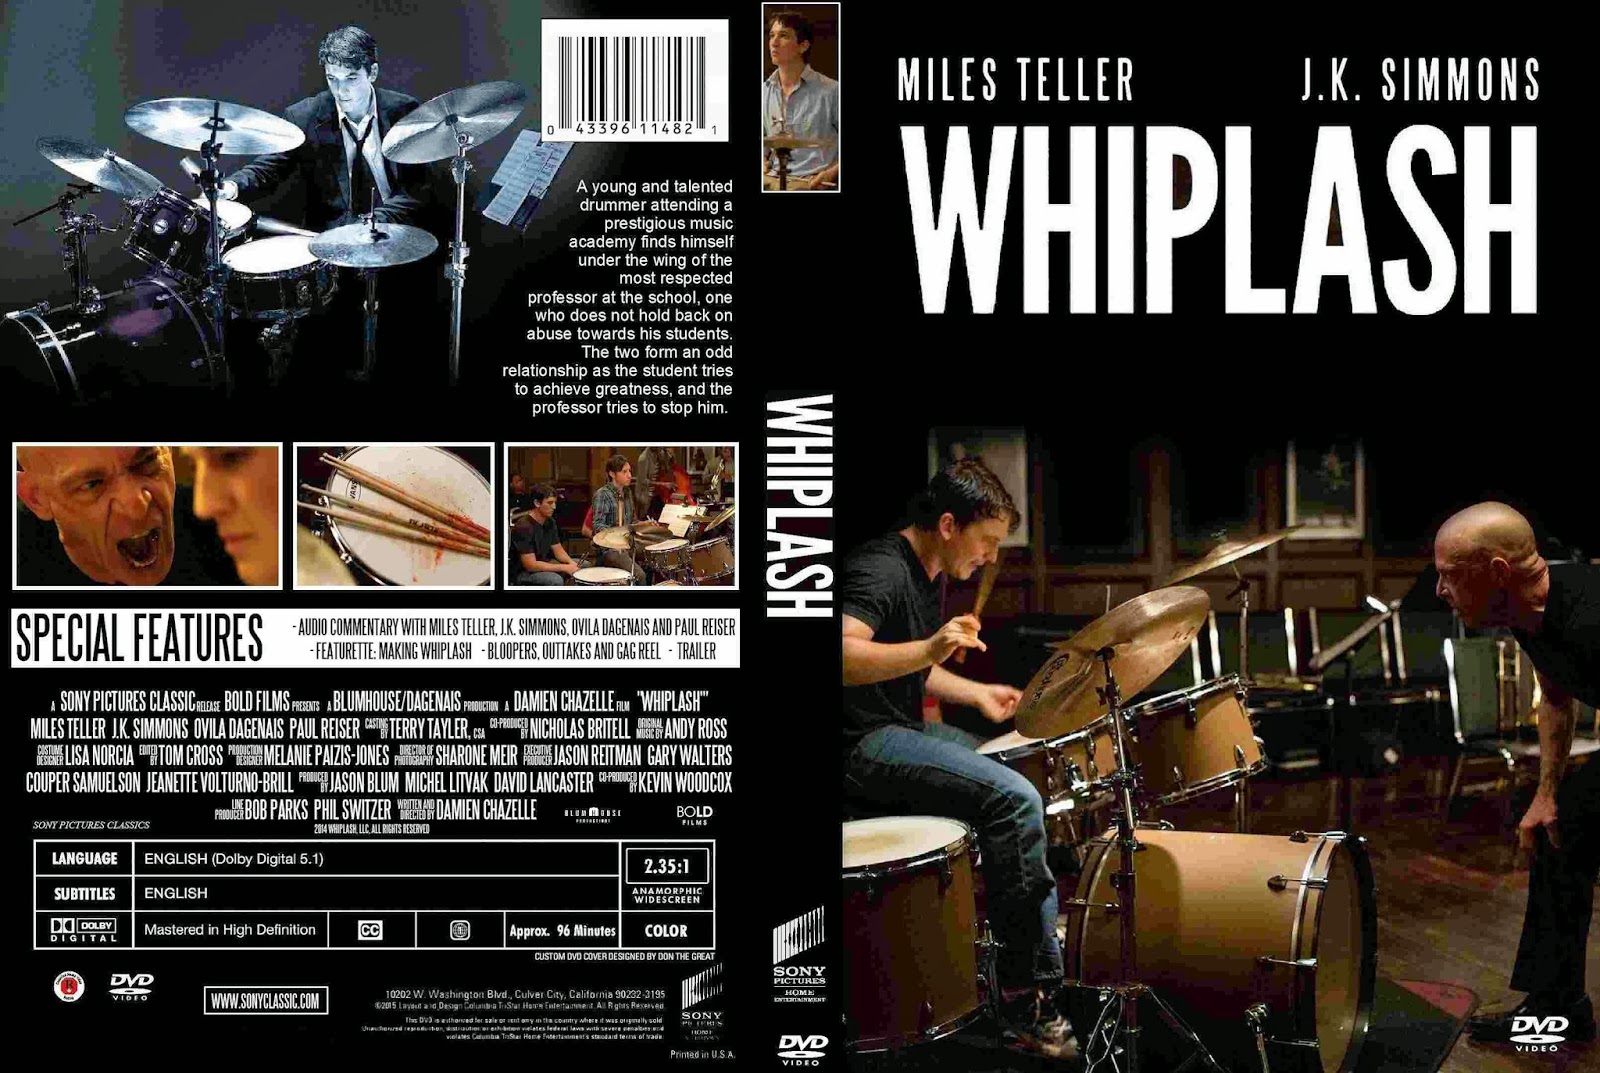 Whiplash (2015) - DVD Cover Movie